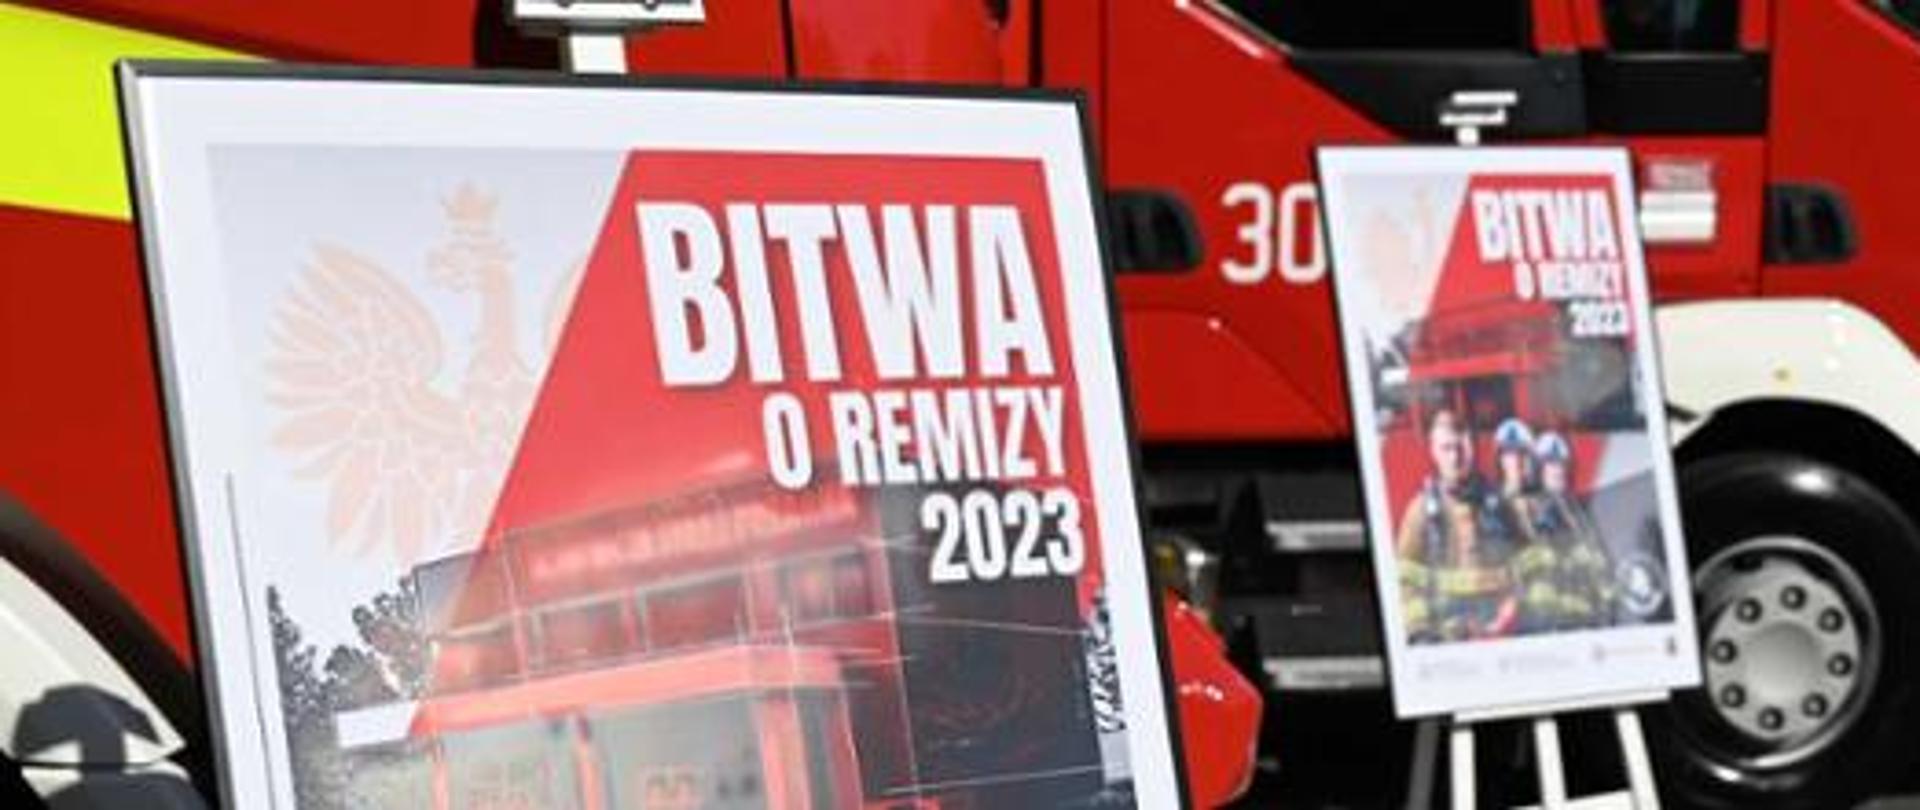 Dwa plakaty promocyjne akcji Bitwa o Remizy 2023 na tle dwóch pojazdów pożarniczych